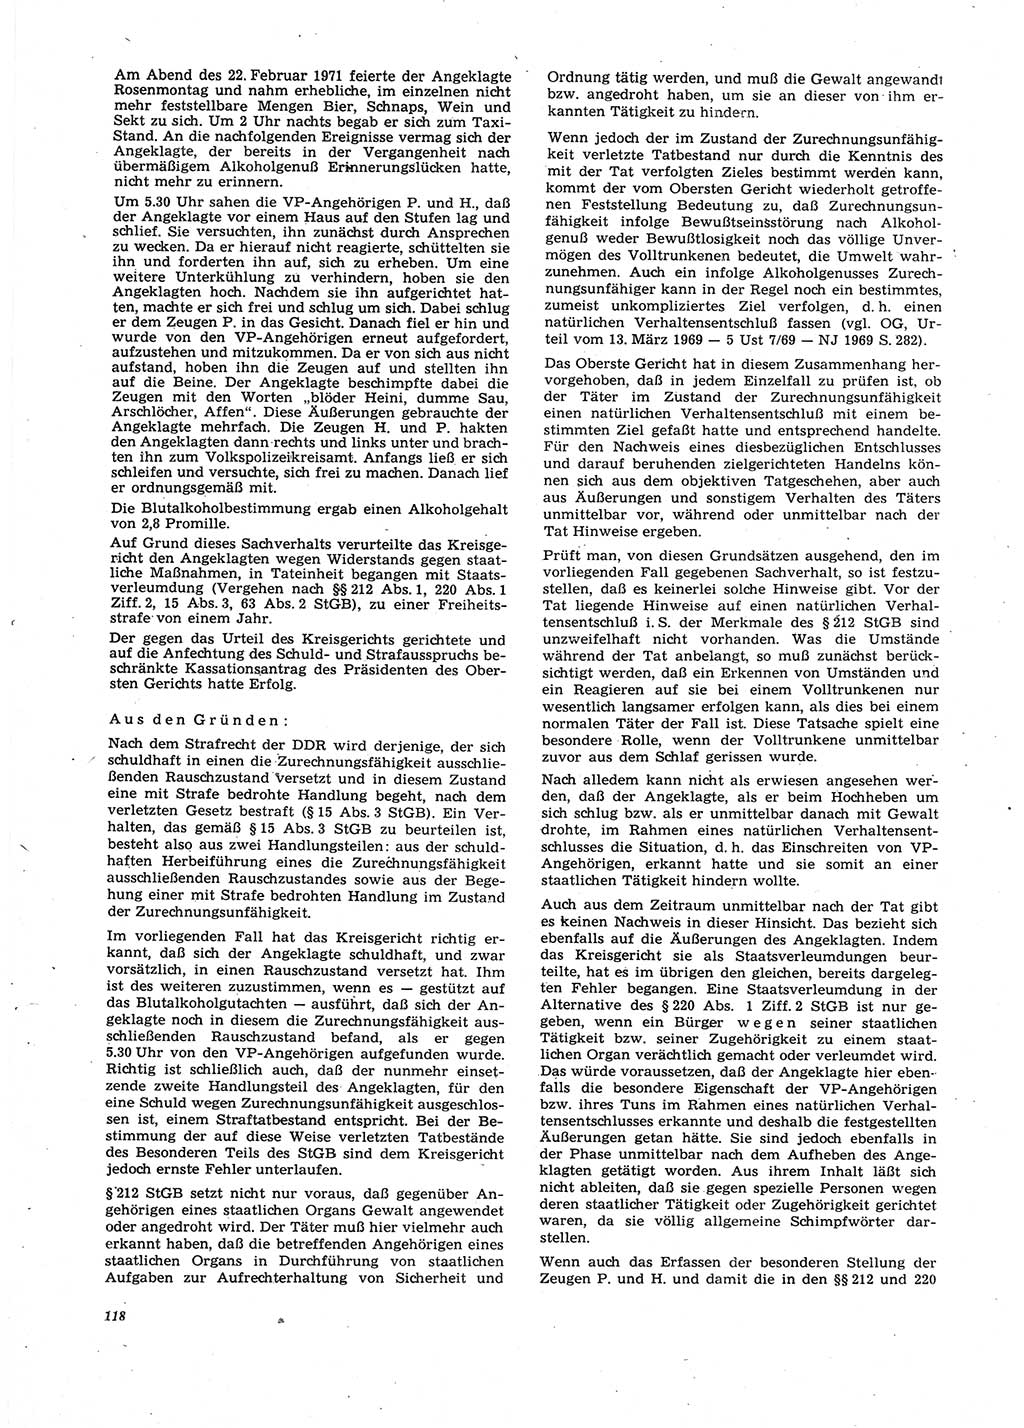 Neue Justiz (NJ), Zeitschrift für Recht und Rechtswissenschaft [Deutsche Demokratische Republik (DDR)], 27. Jahrgang 1973, Seite 118 (NJ DDR 1973, S. 118)